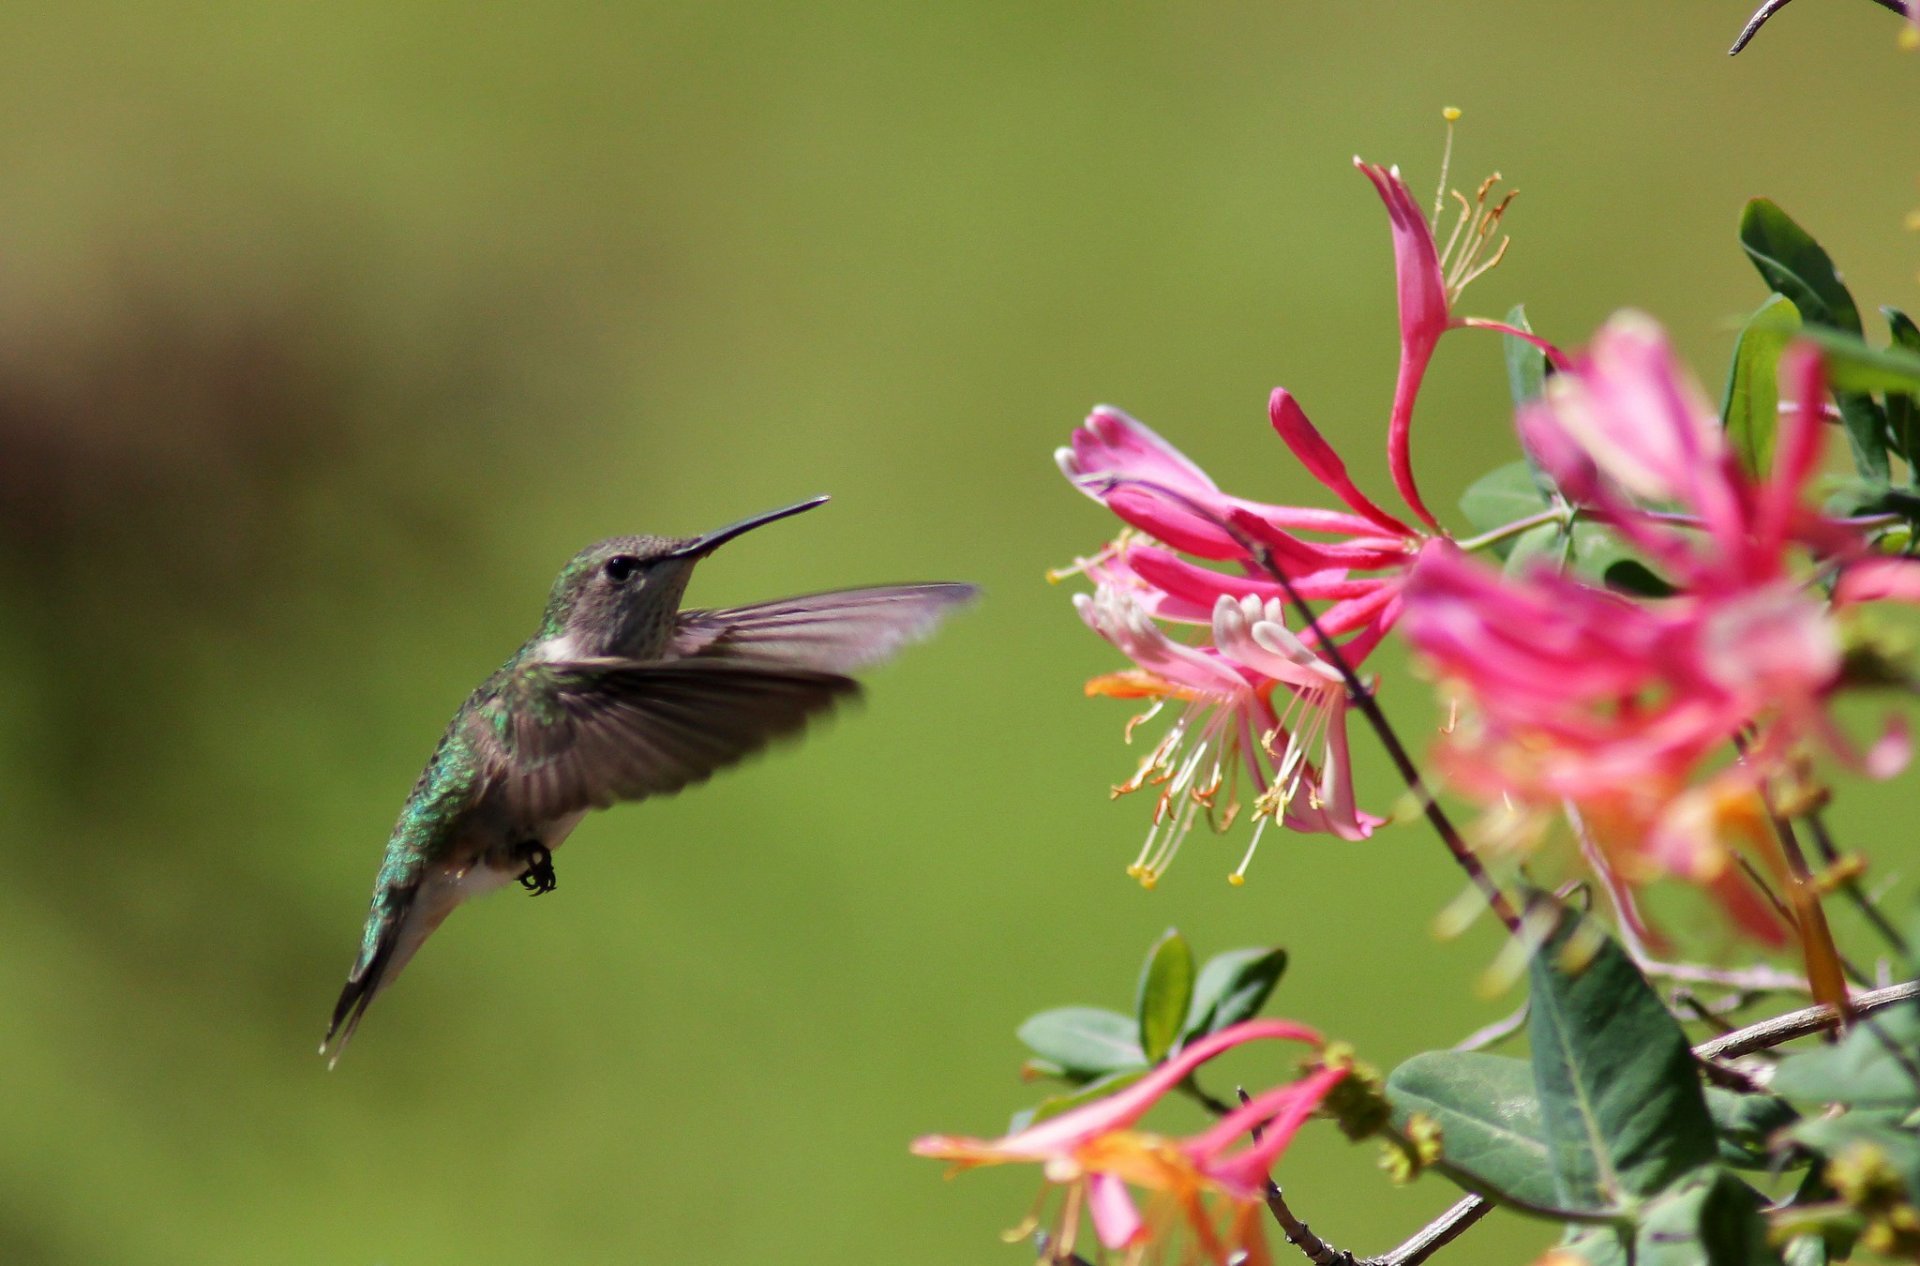 Hummingbirds in Arkansas